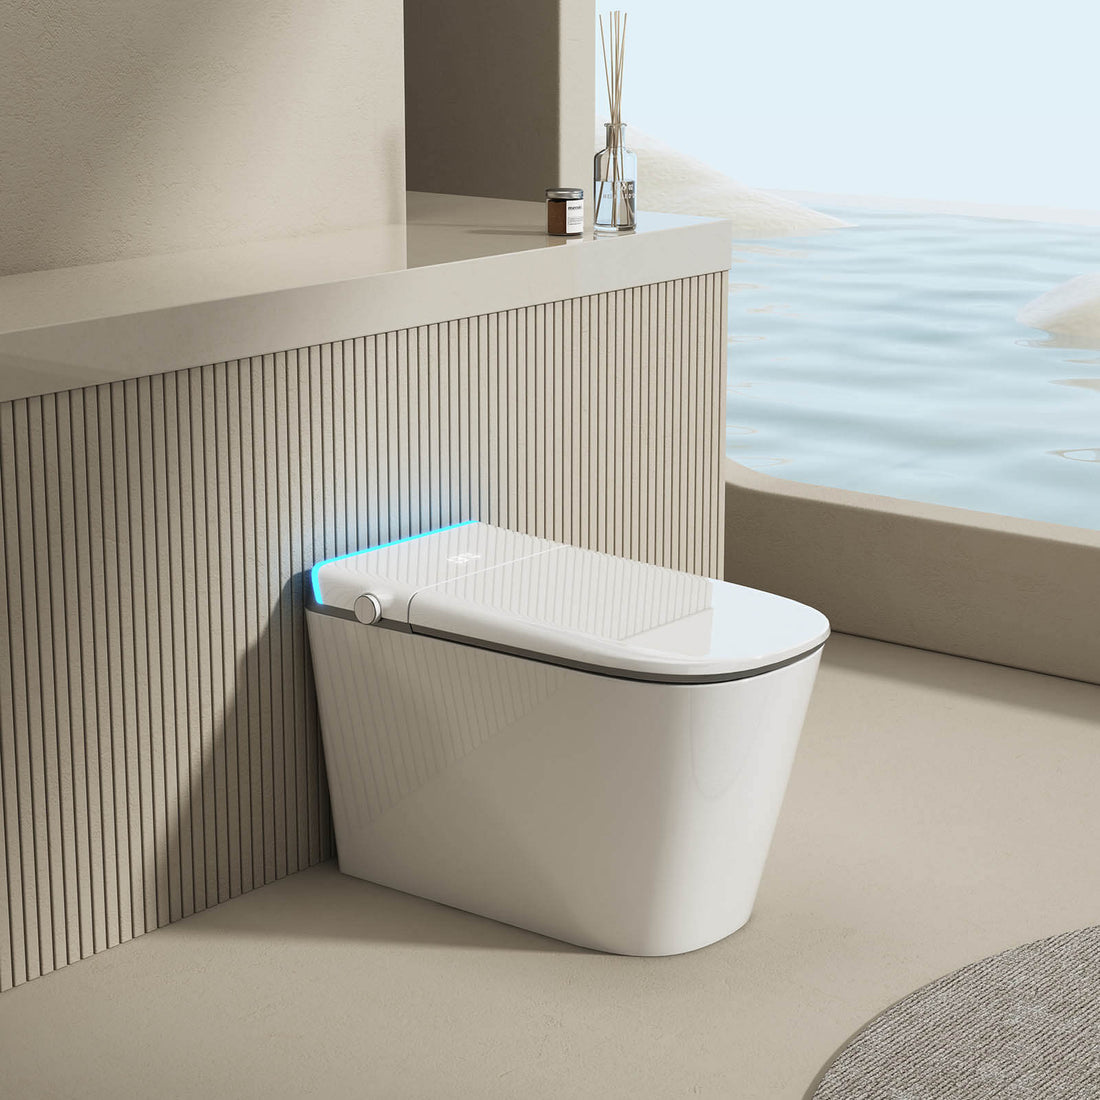 Modern Silent Flushing Smart Bidet Toilet